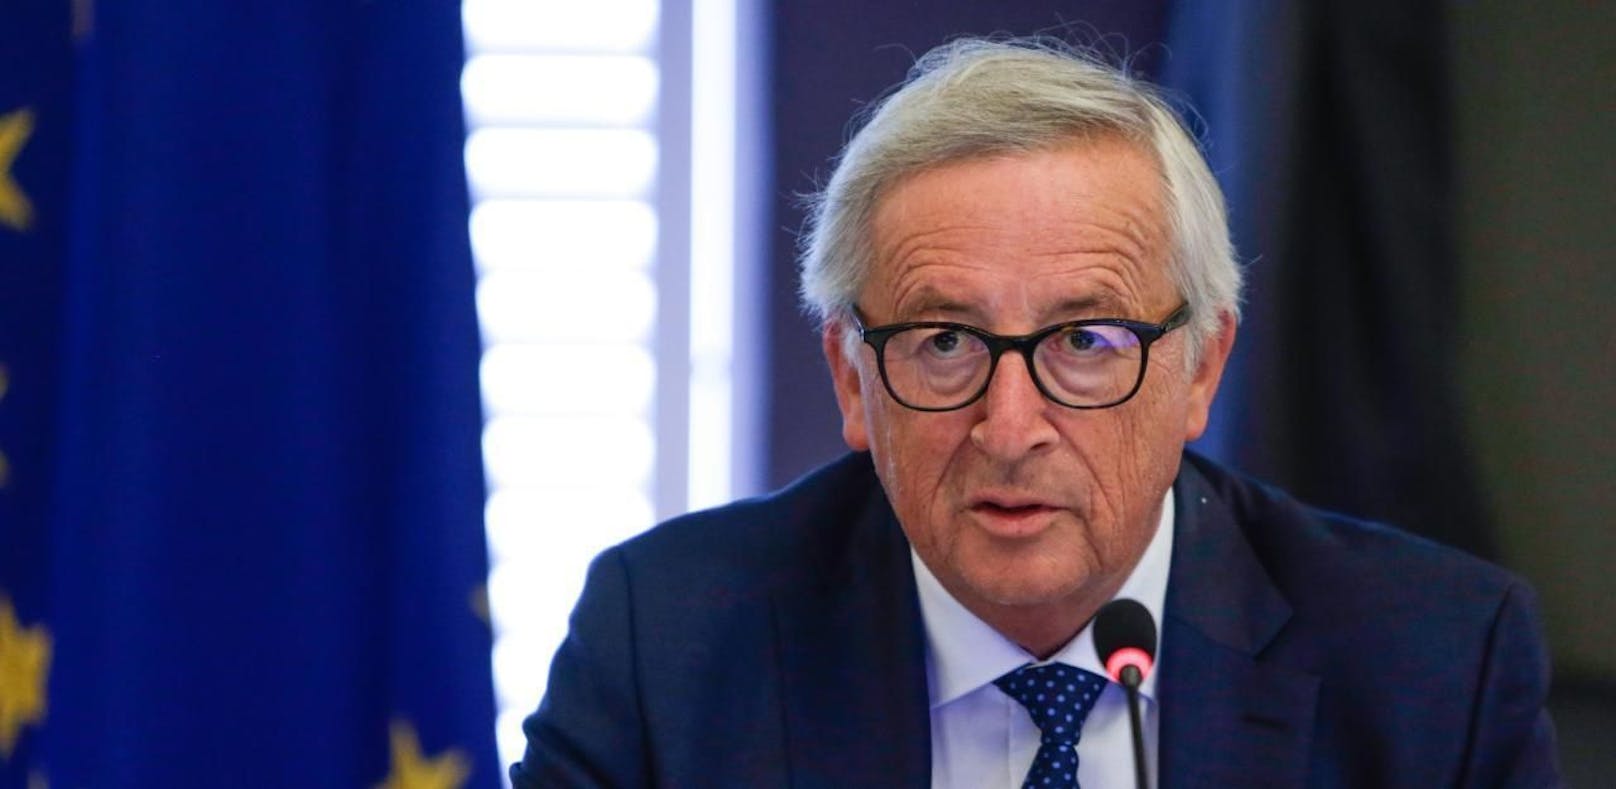 Juncker betont: Habe kein Alkoholproblem